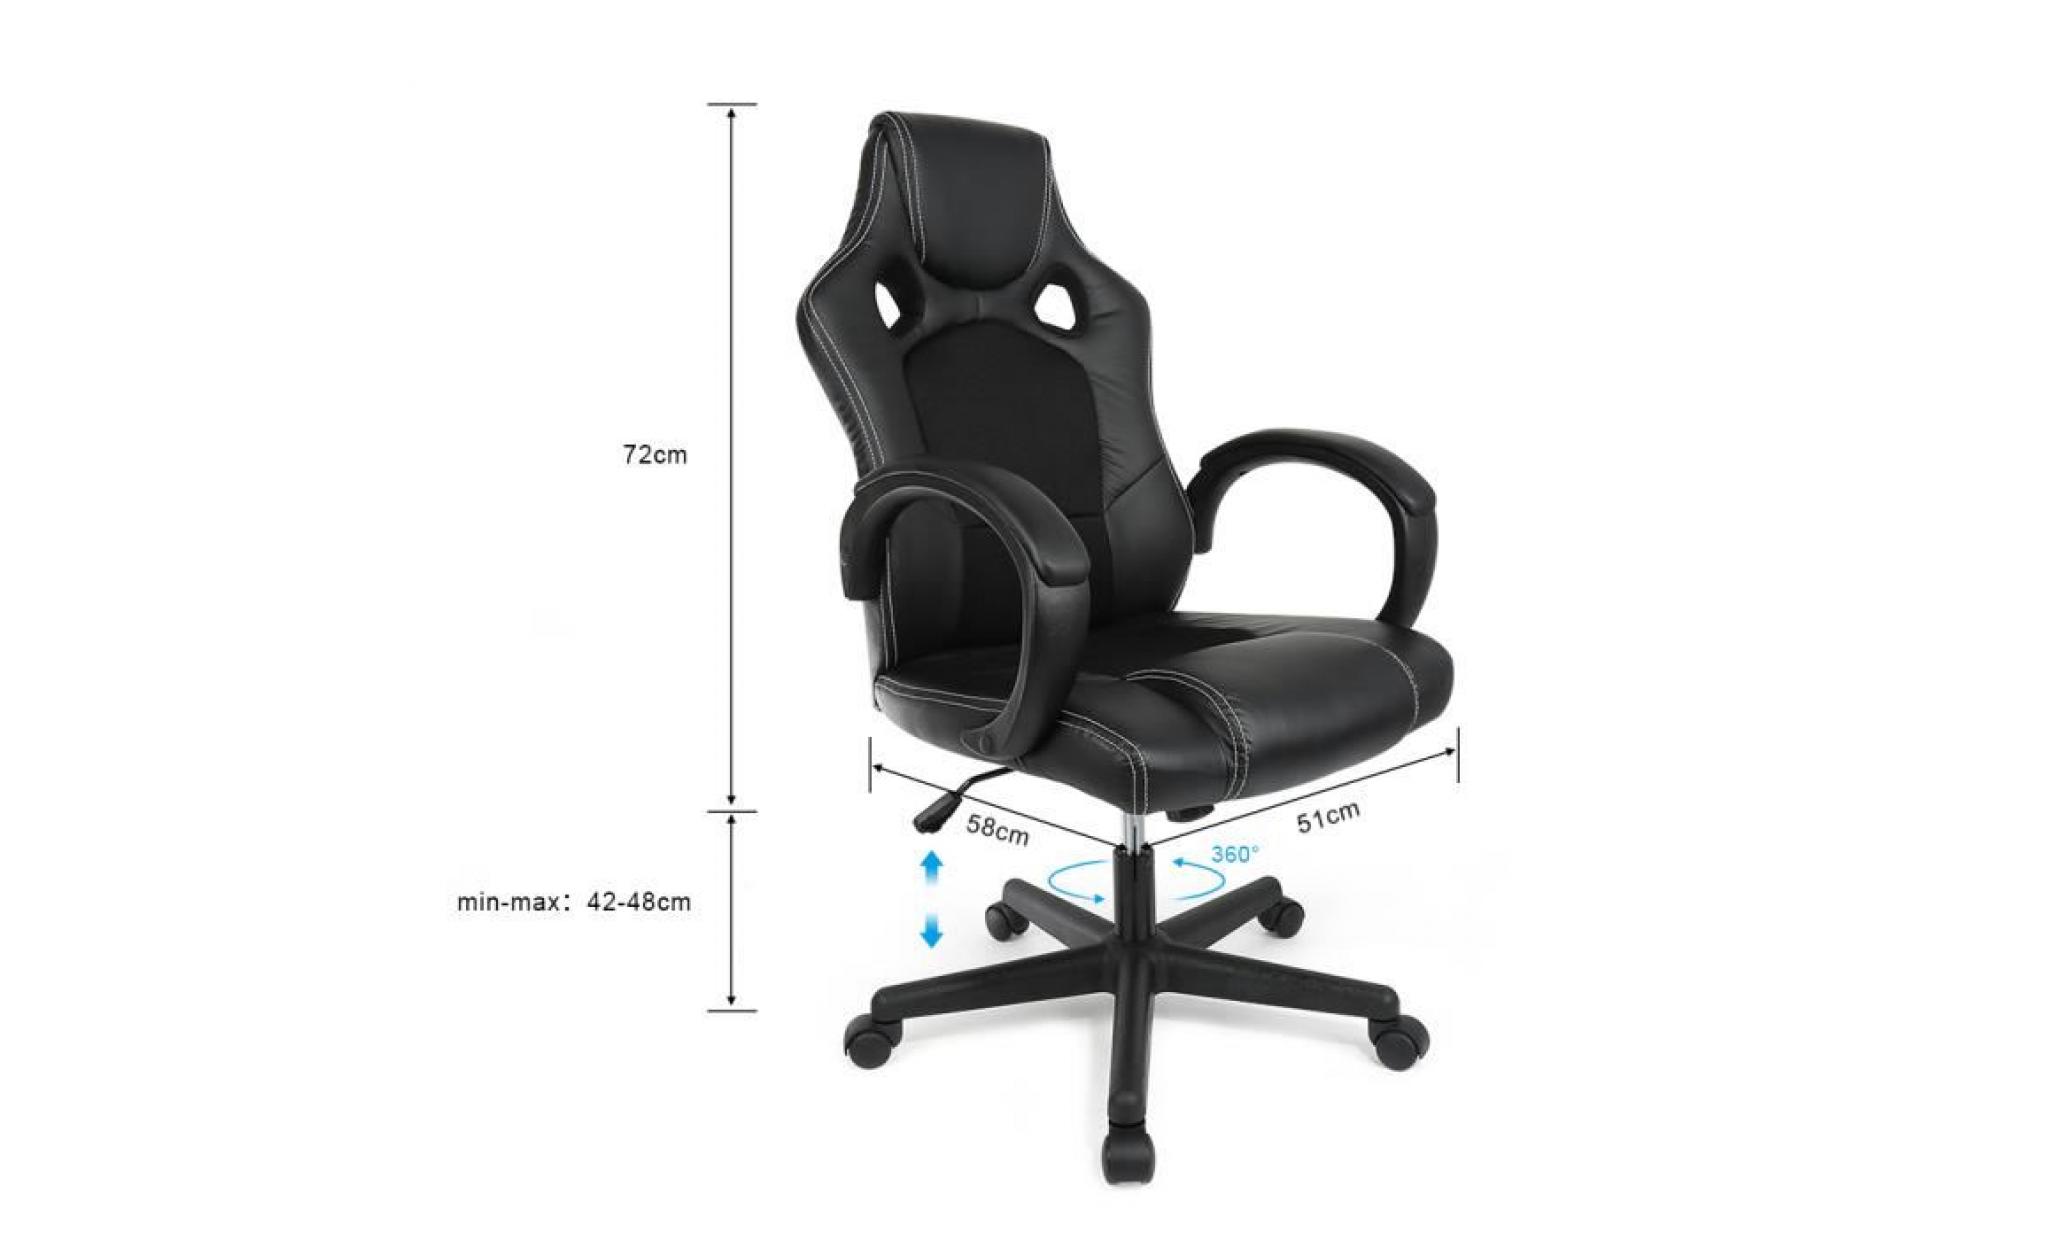 noir 58*51*(114 120)cm fauteuil de bureau gaming chaise de jeux @ bonachat pas cher